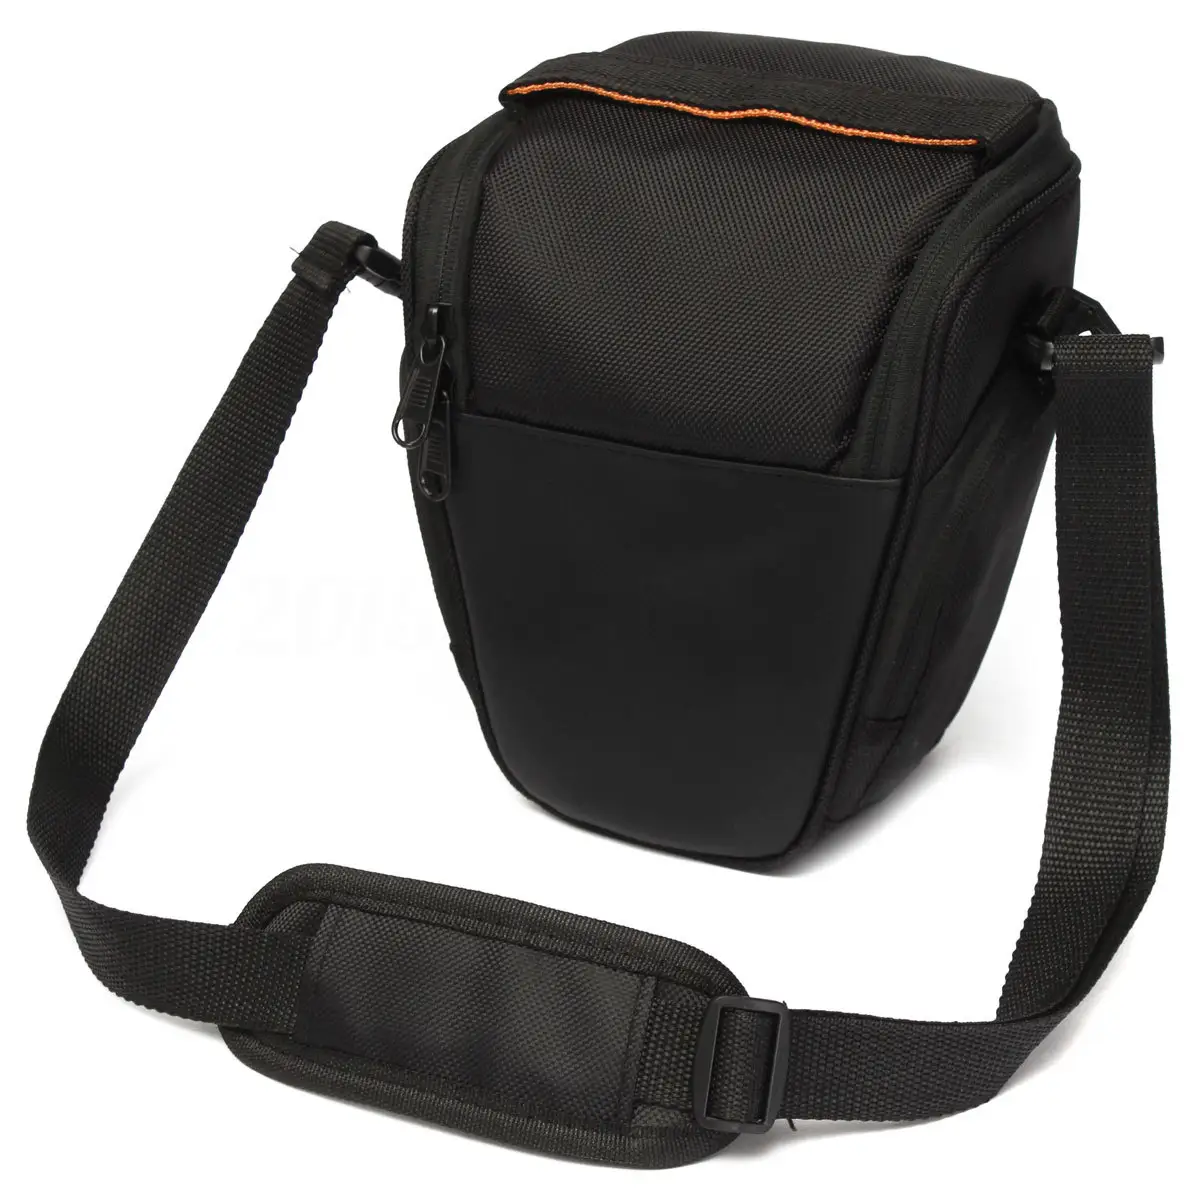 Camera Backpack Video Digital DSLR Bag Waterproof Outdoor Camera Photo Bag Case for DSLR Camera Photography Photo Bag Lens